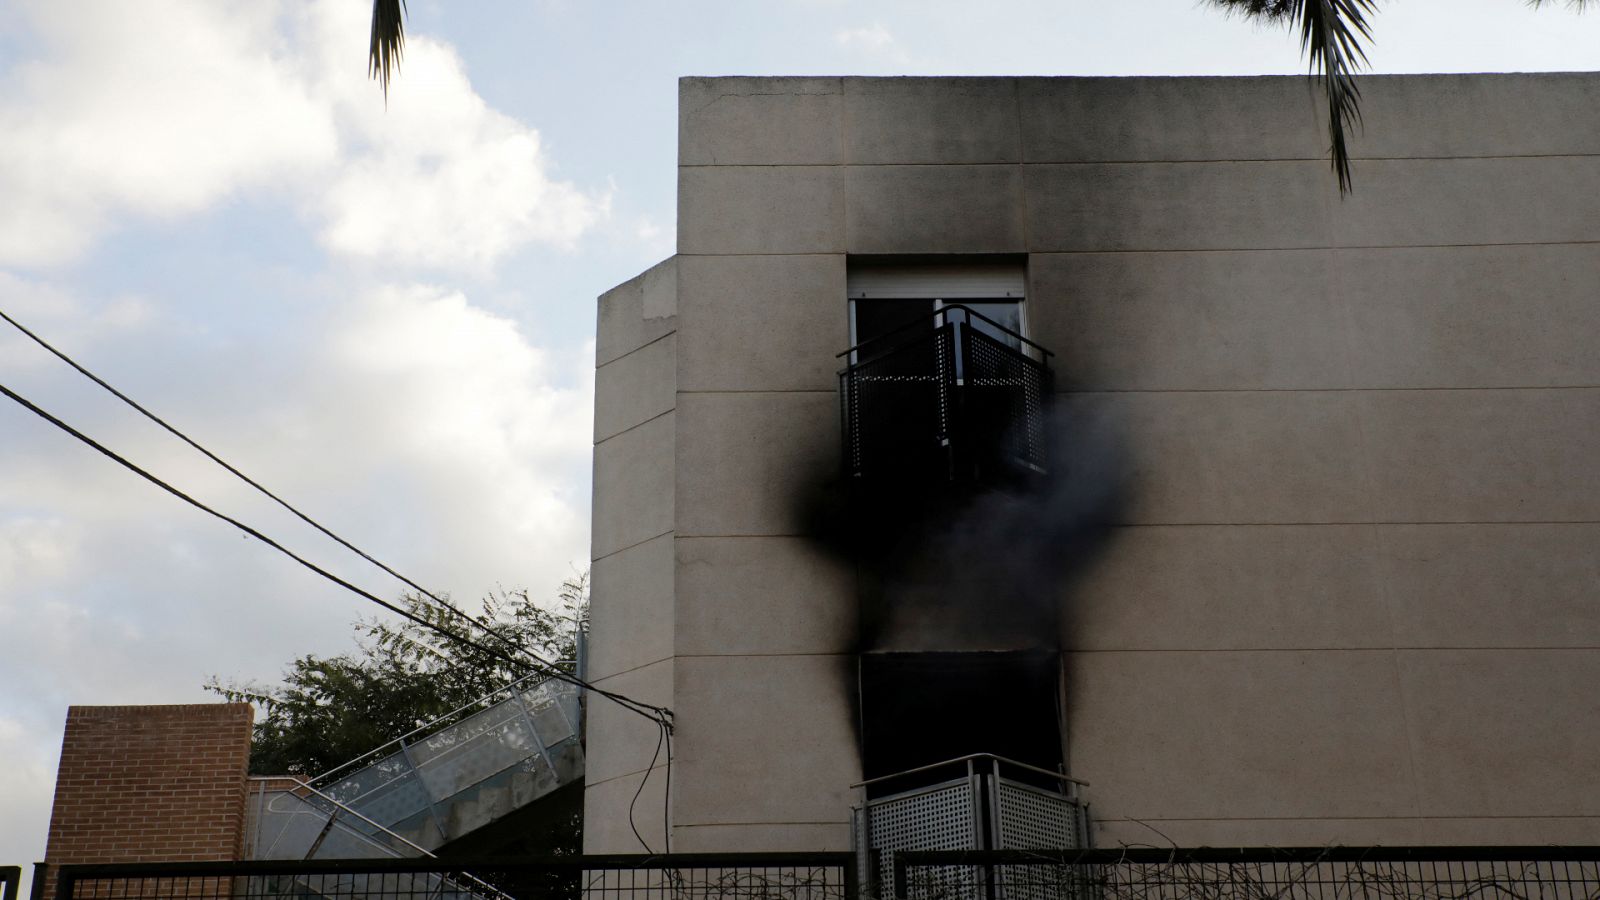 14 horas - Un cortocircuito podría haber sido la causa del incendio en la residencia de mayores de Moncada - Escuchar ahora